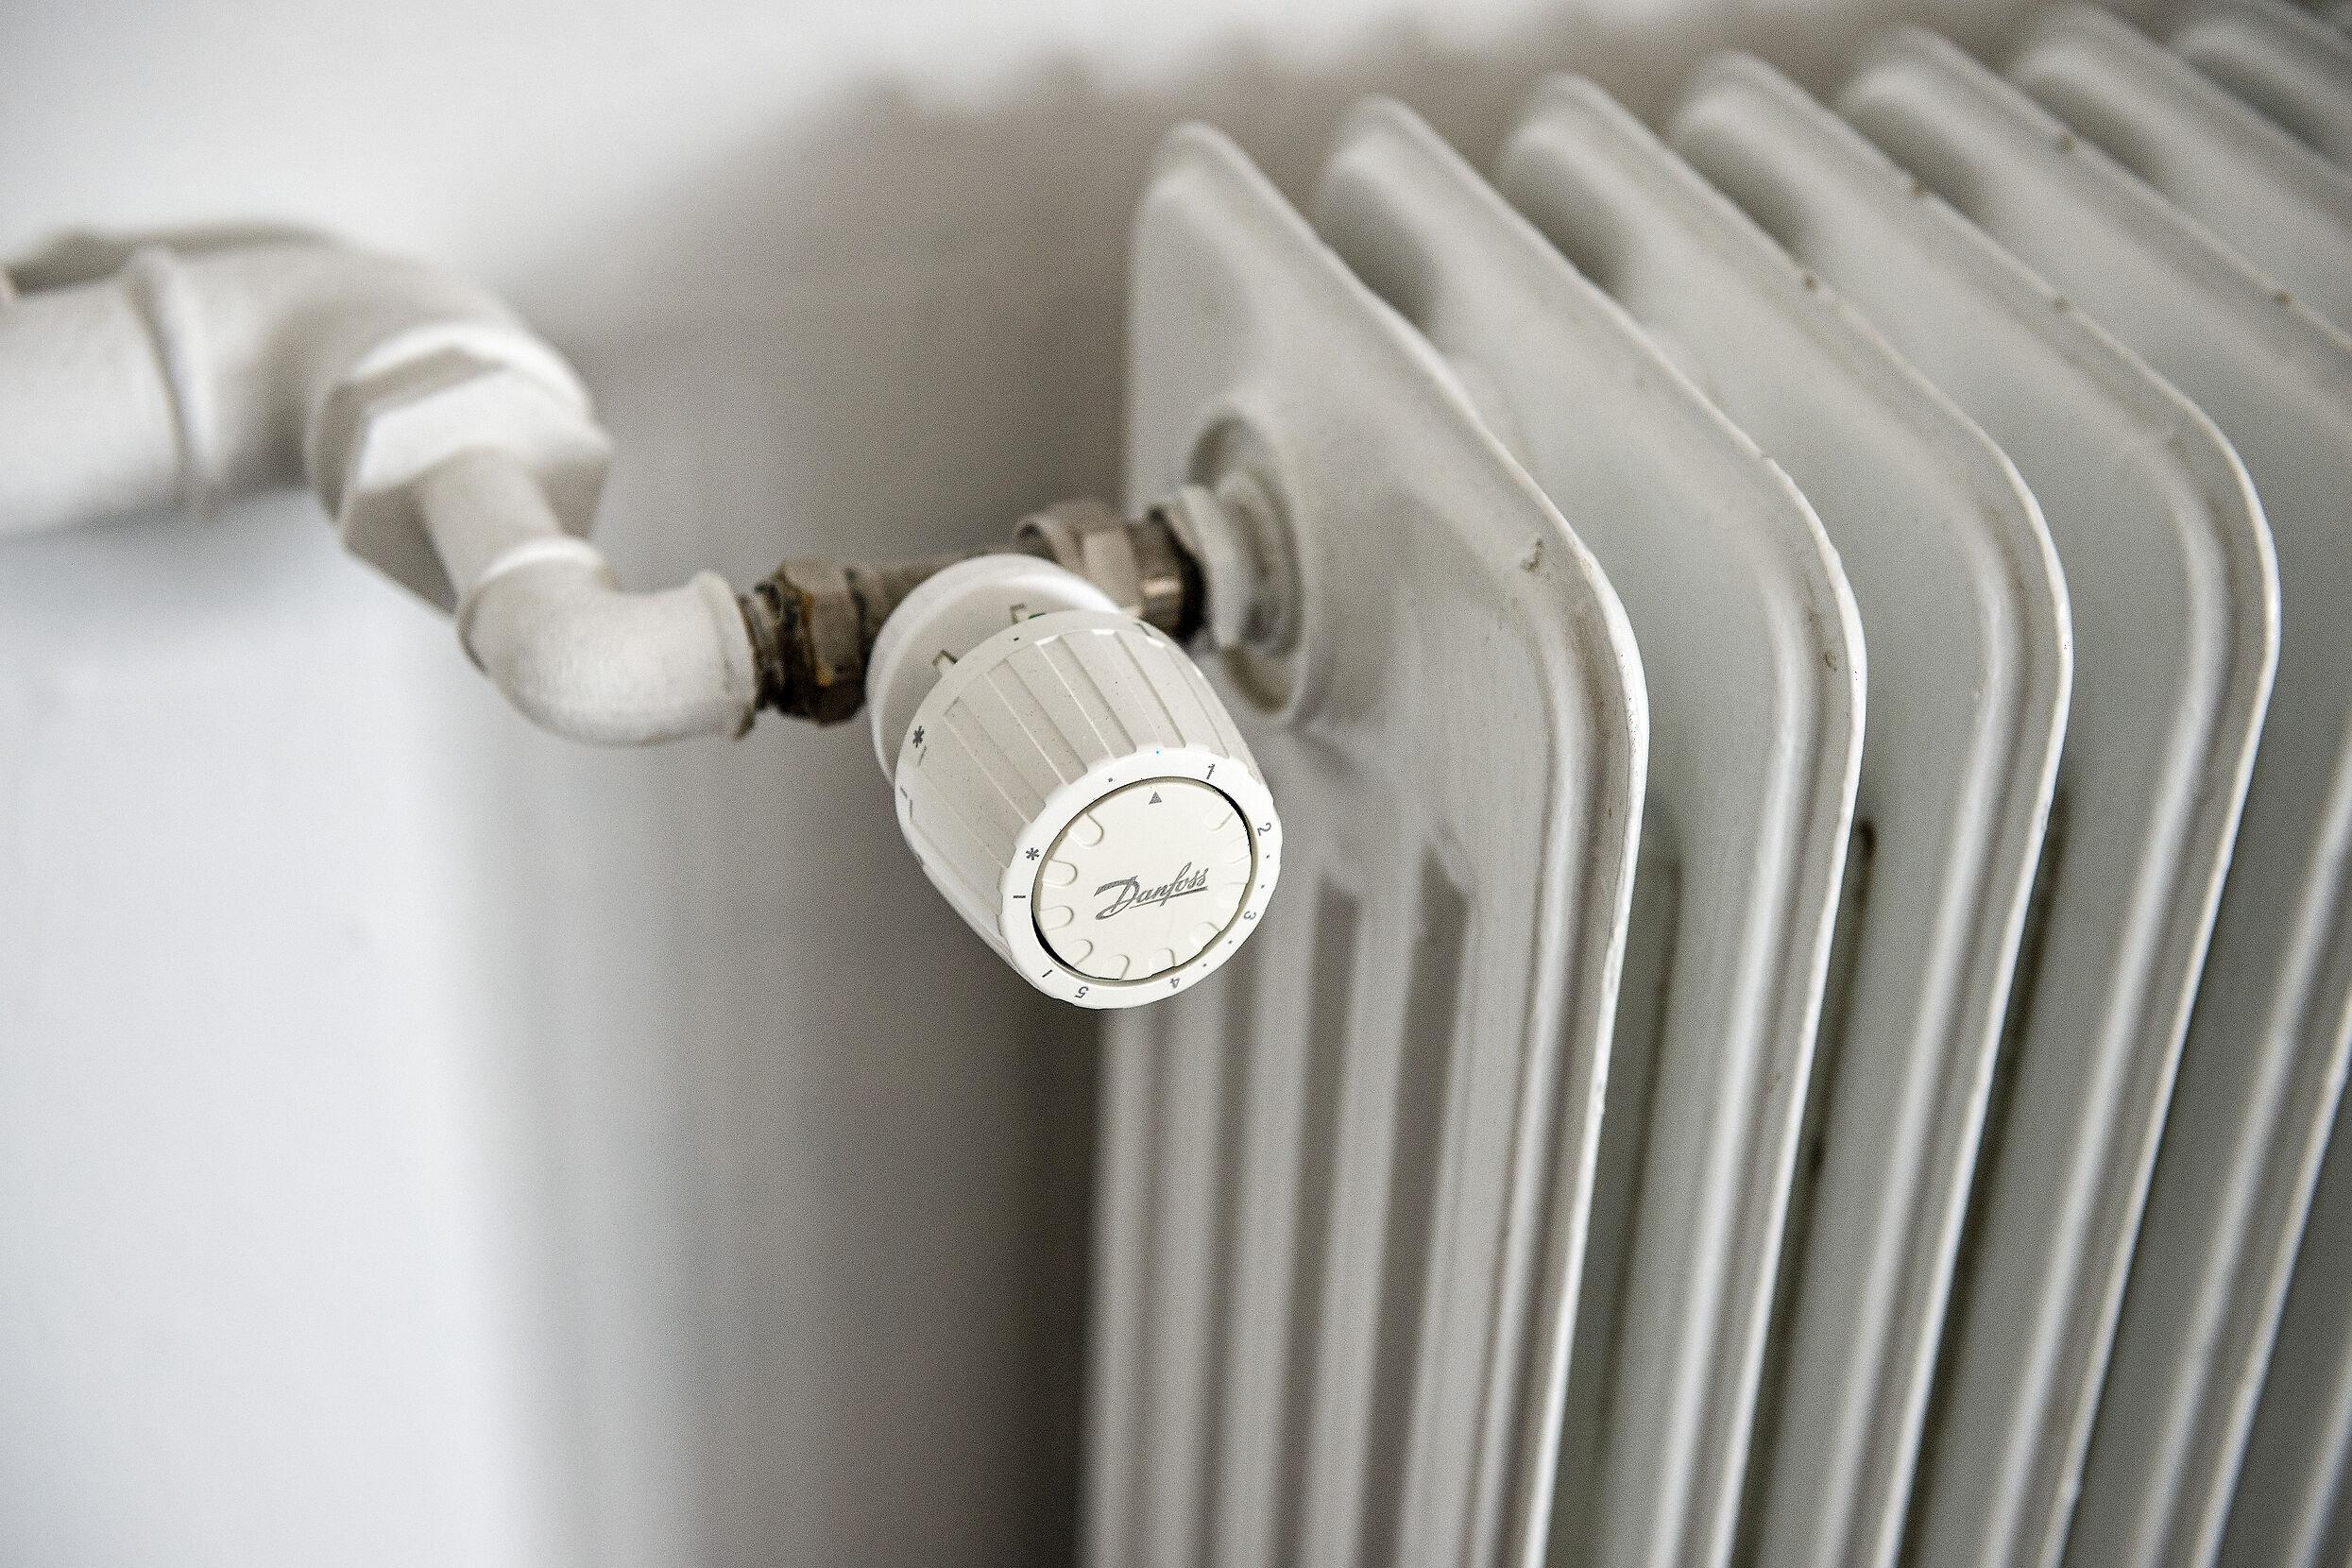 Mens borgere, der varmer hjemmet op med gas, har måttet se store prisstigninger, er mange fjernvarmekunder sluppet med skrækken. 